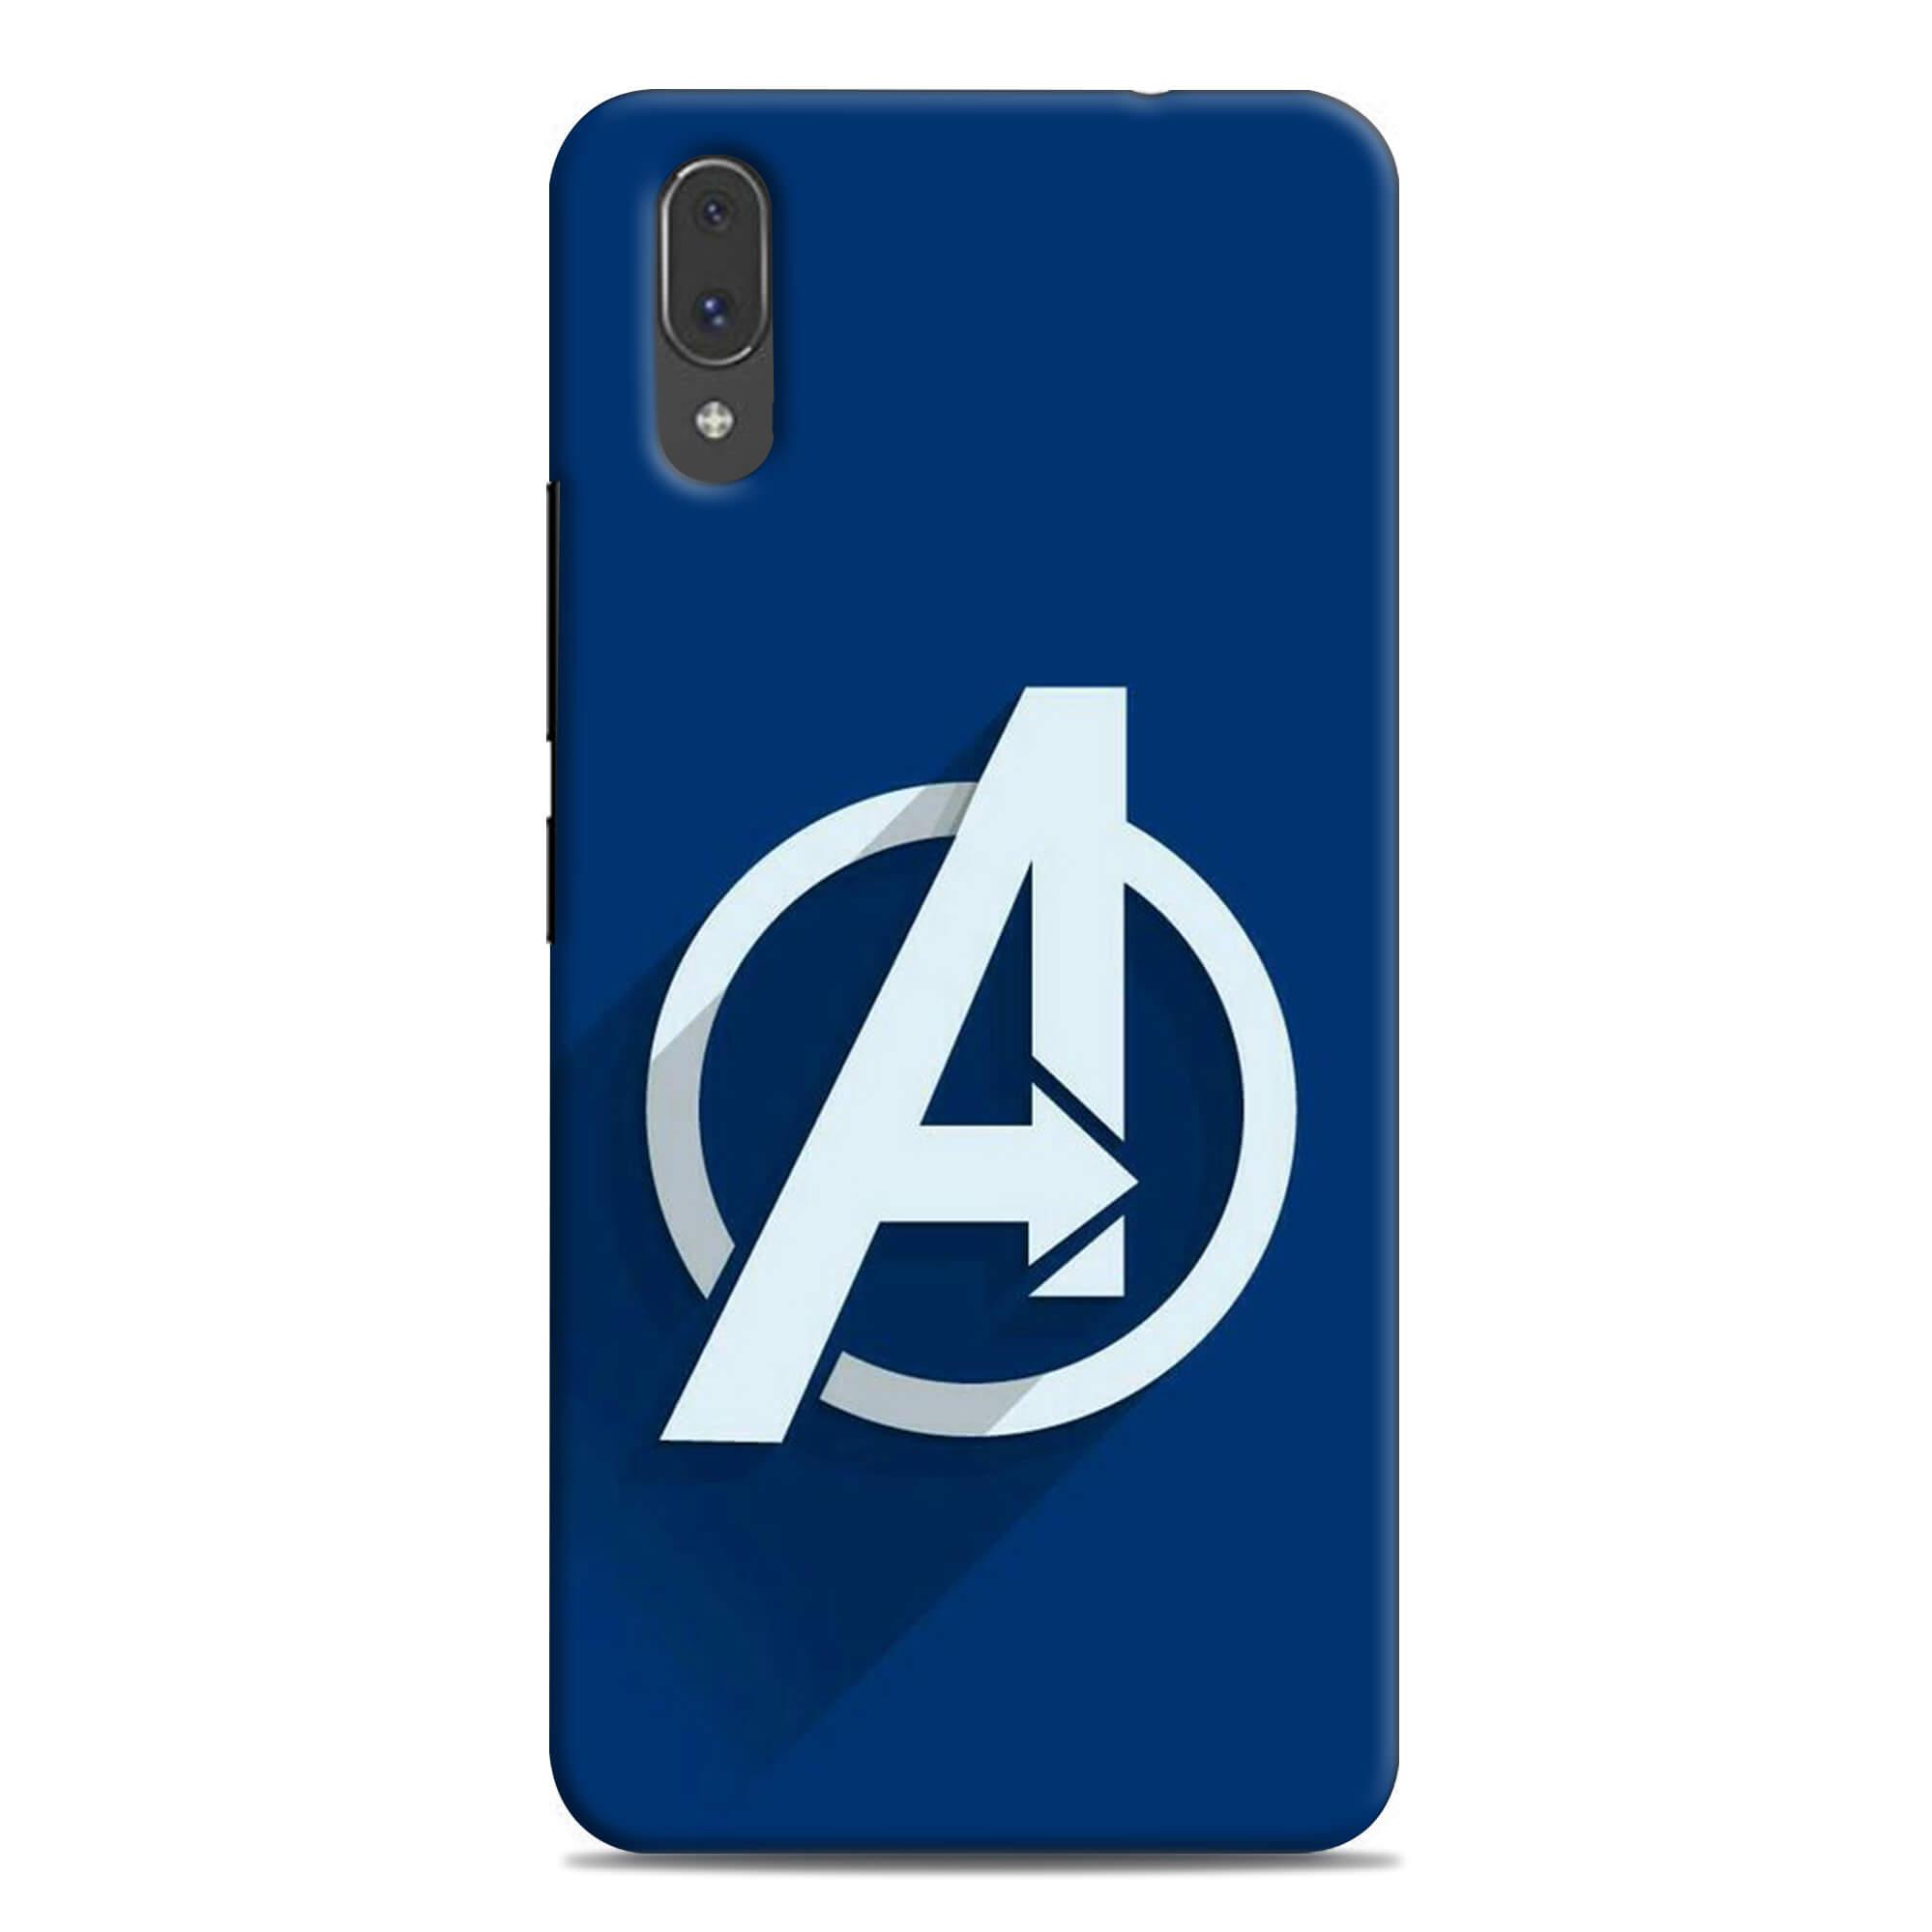 Vivo Phone Logo - Avengers logo design VIVO V11 PRO mobile case